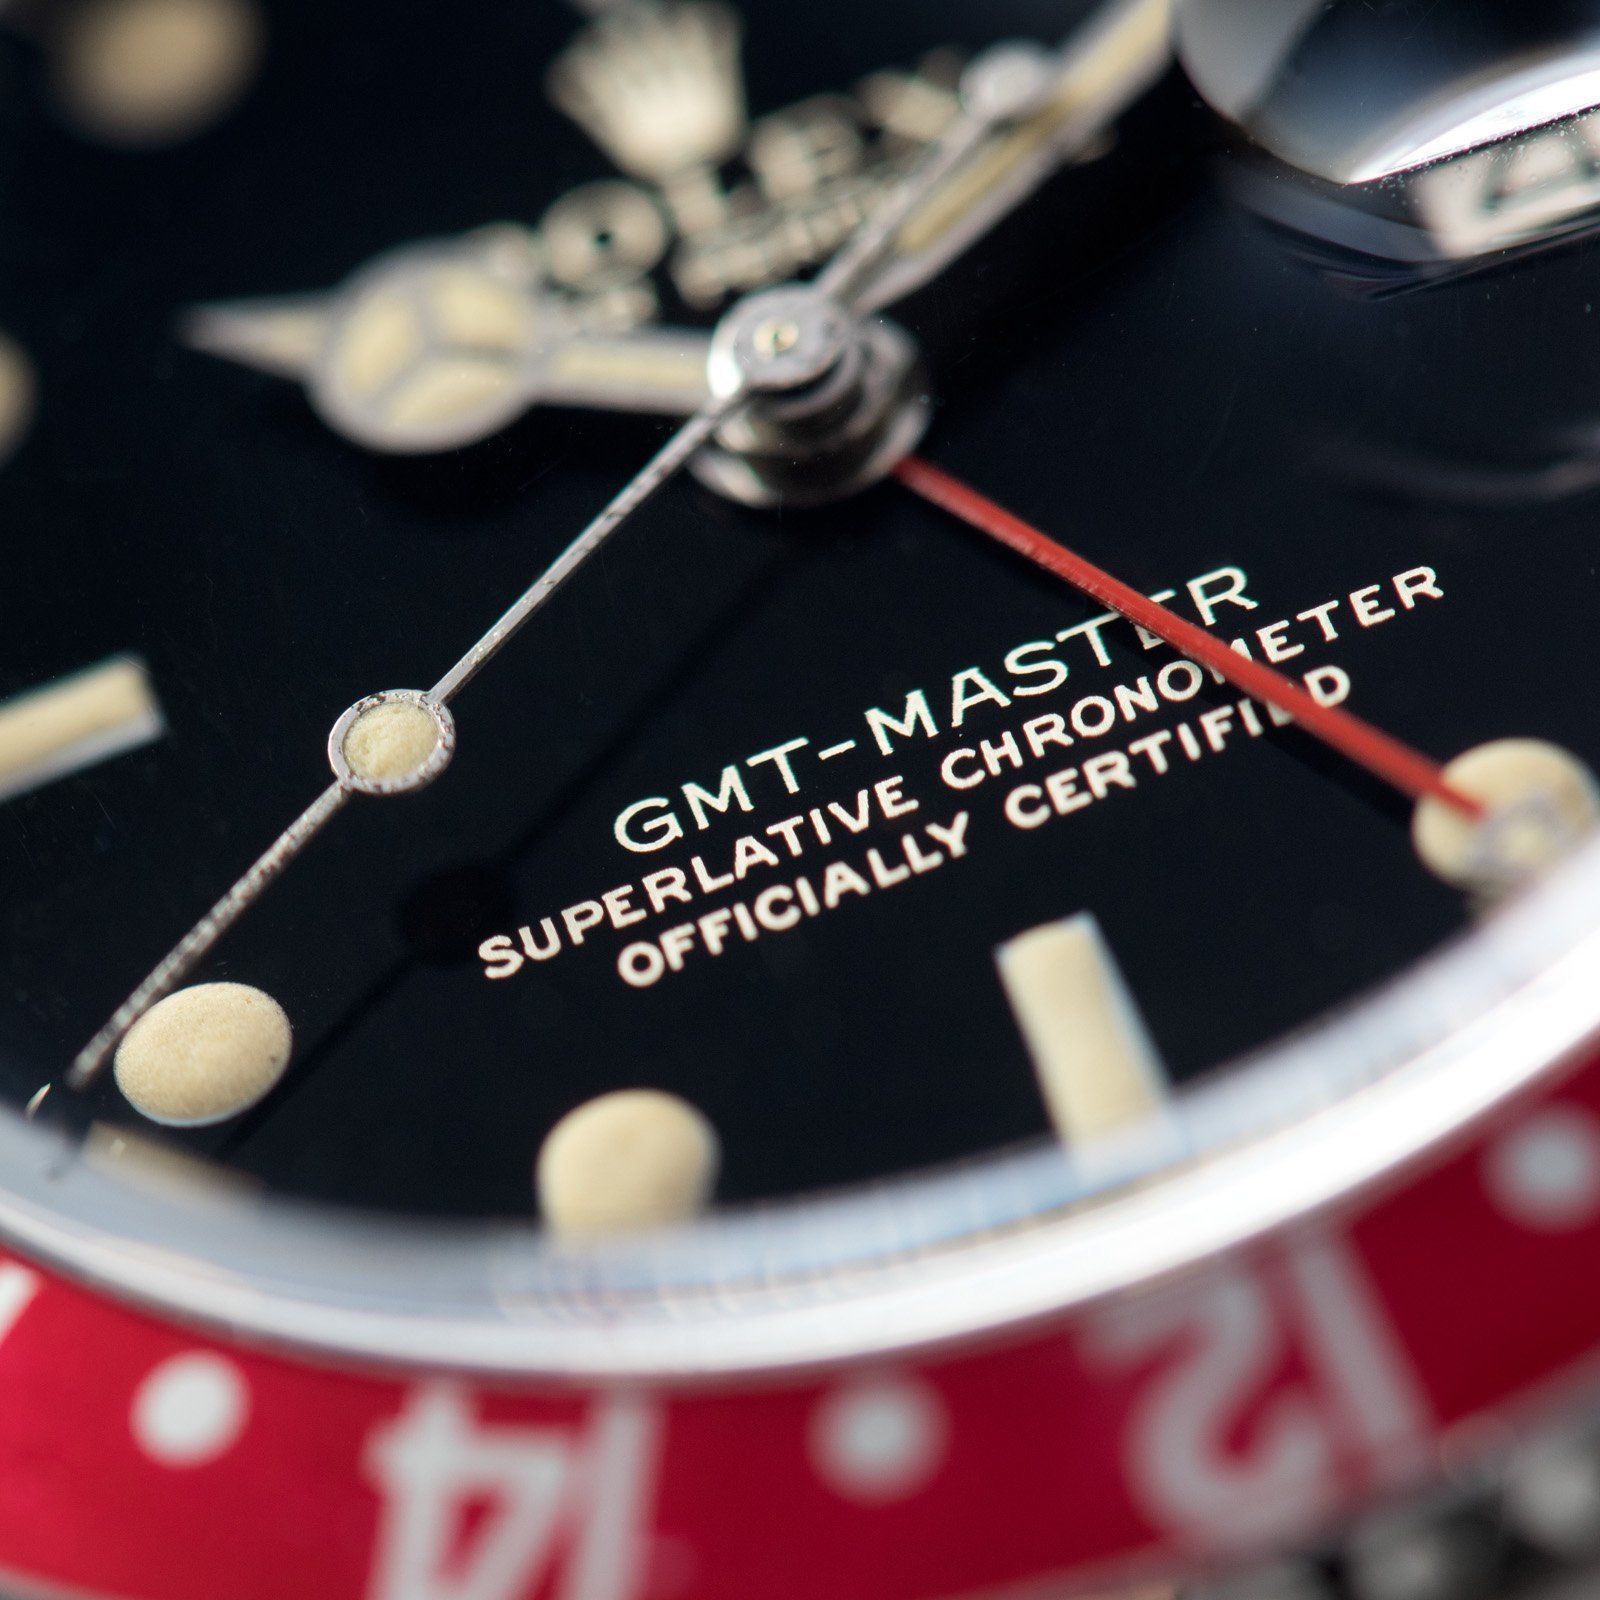 Rolex 1675 Gilt Dial GMT Master